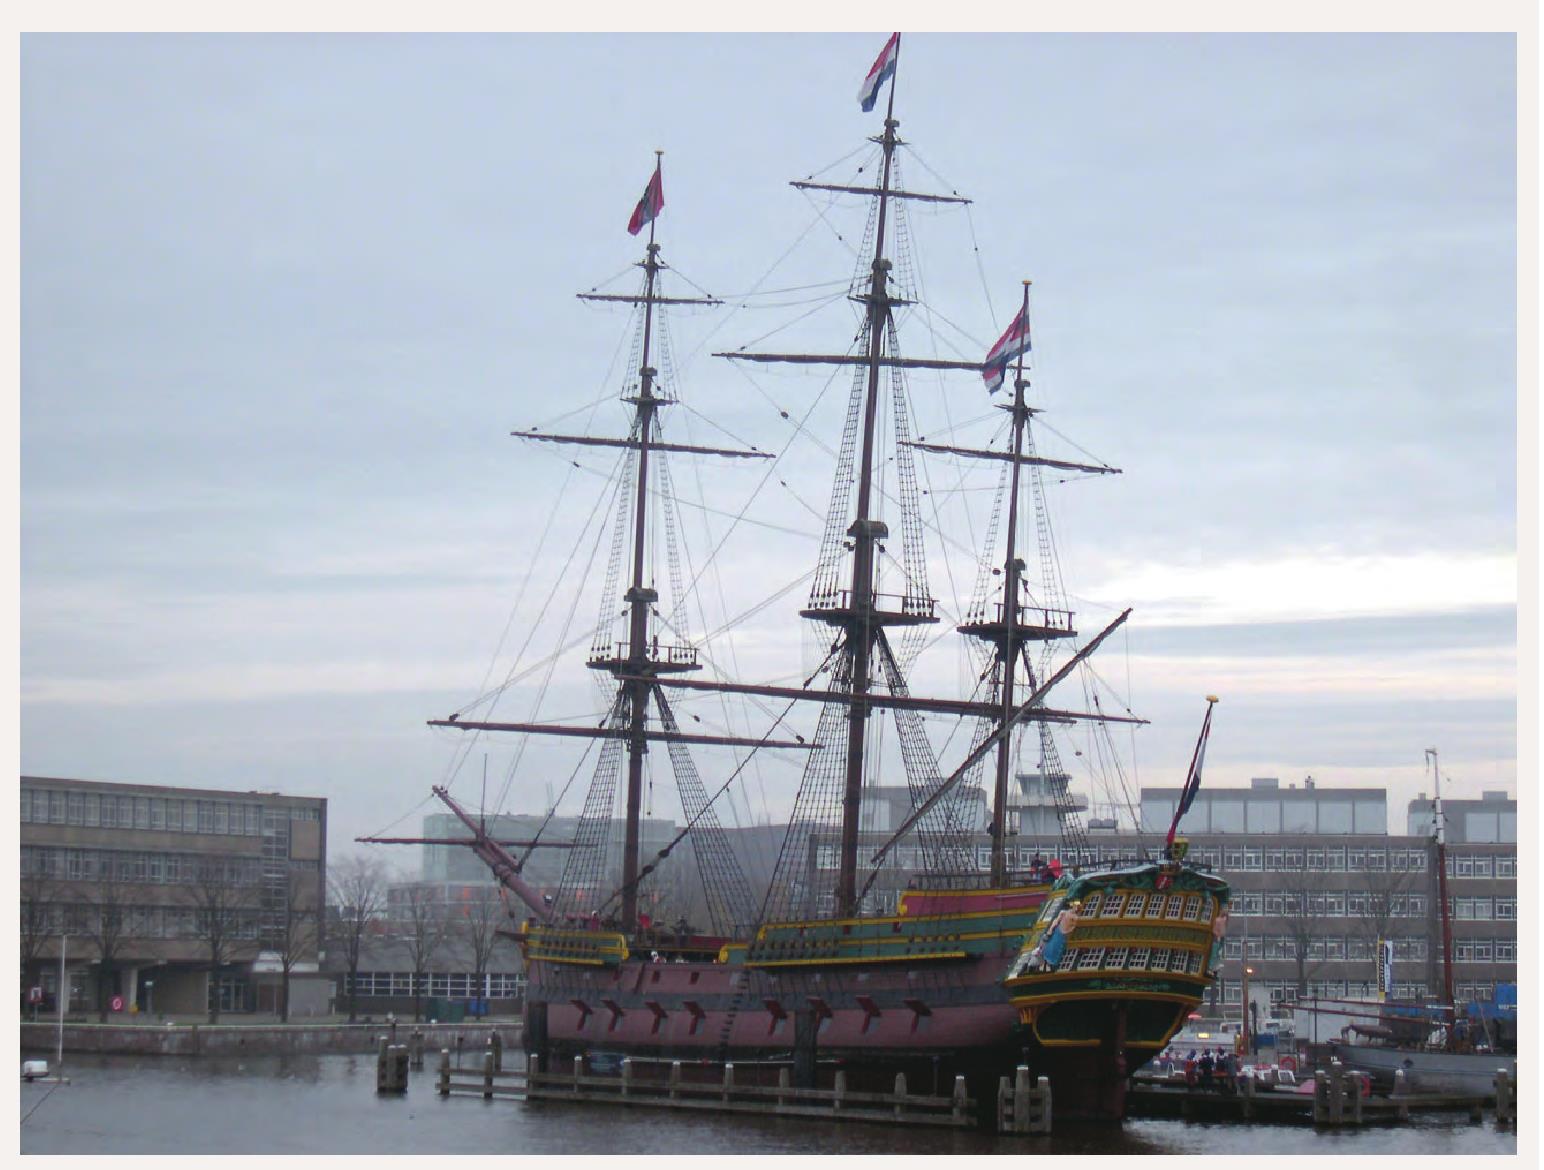 荷兰海事博物馆中展示的荷兰东印度公司商船“阿姆斯特丹号”模型